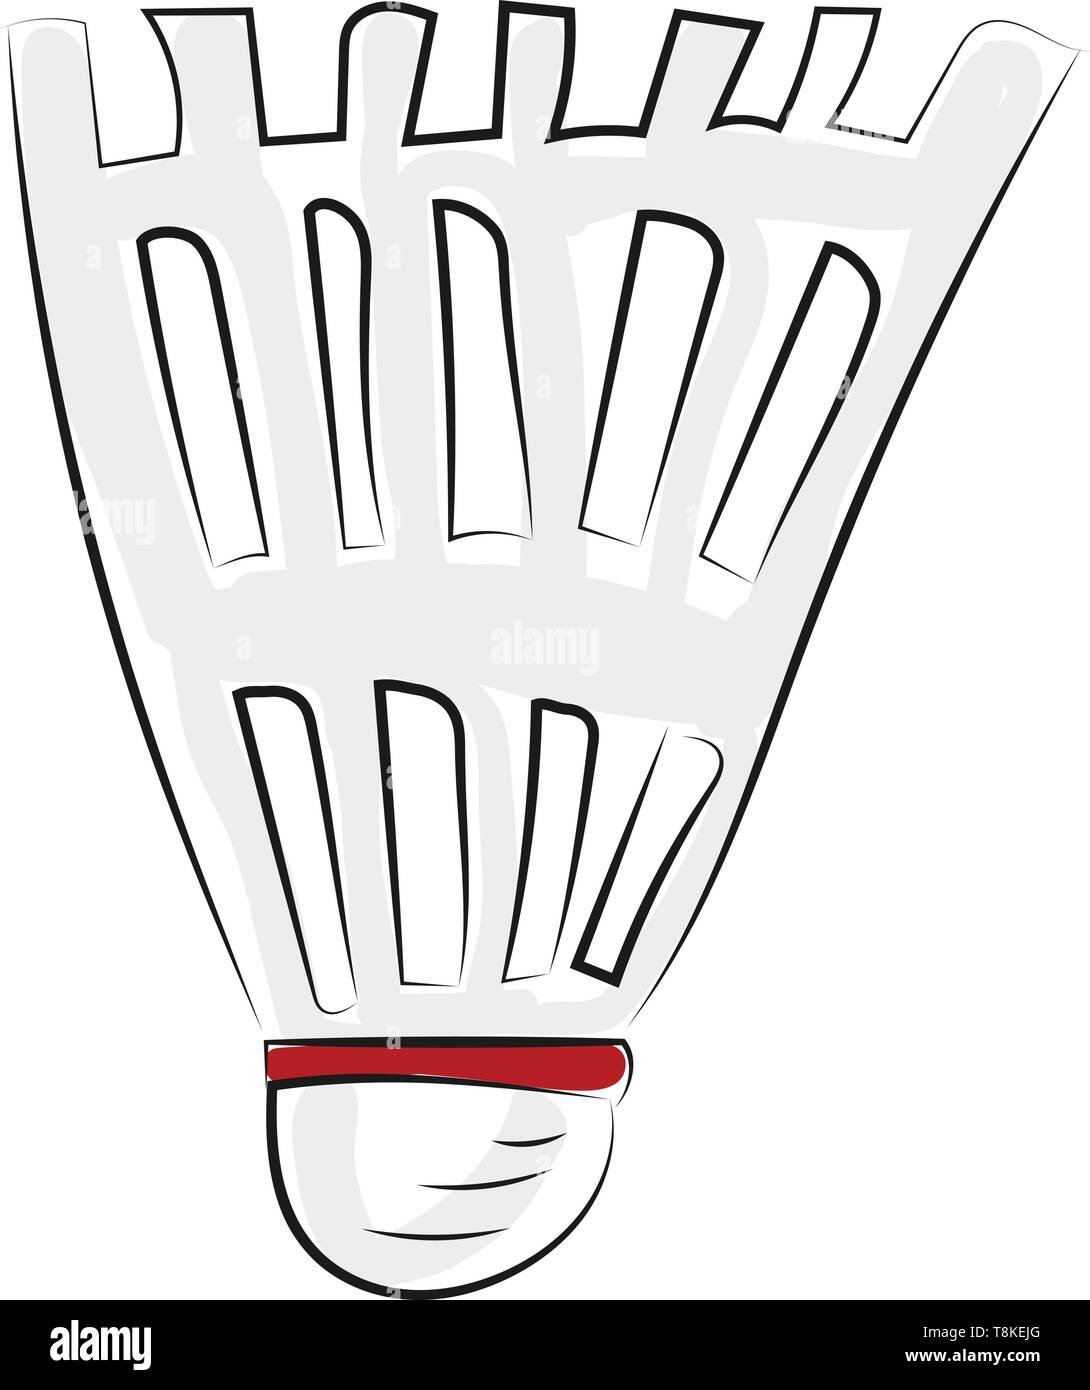 Einen Korken auf die weißen Federn befestigt sind eine konische Form zu bilden, mit einer roten Schleife in der Regel aufgewickelt mit Schläger in die Spiele der badmin Struck Stock Vektor